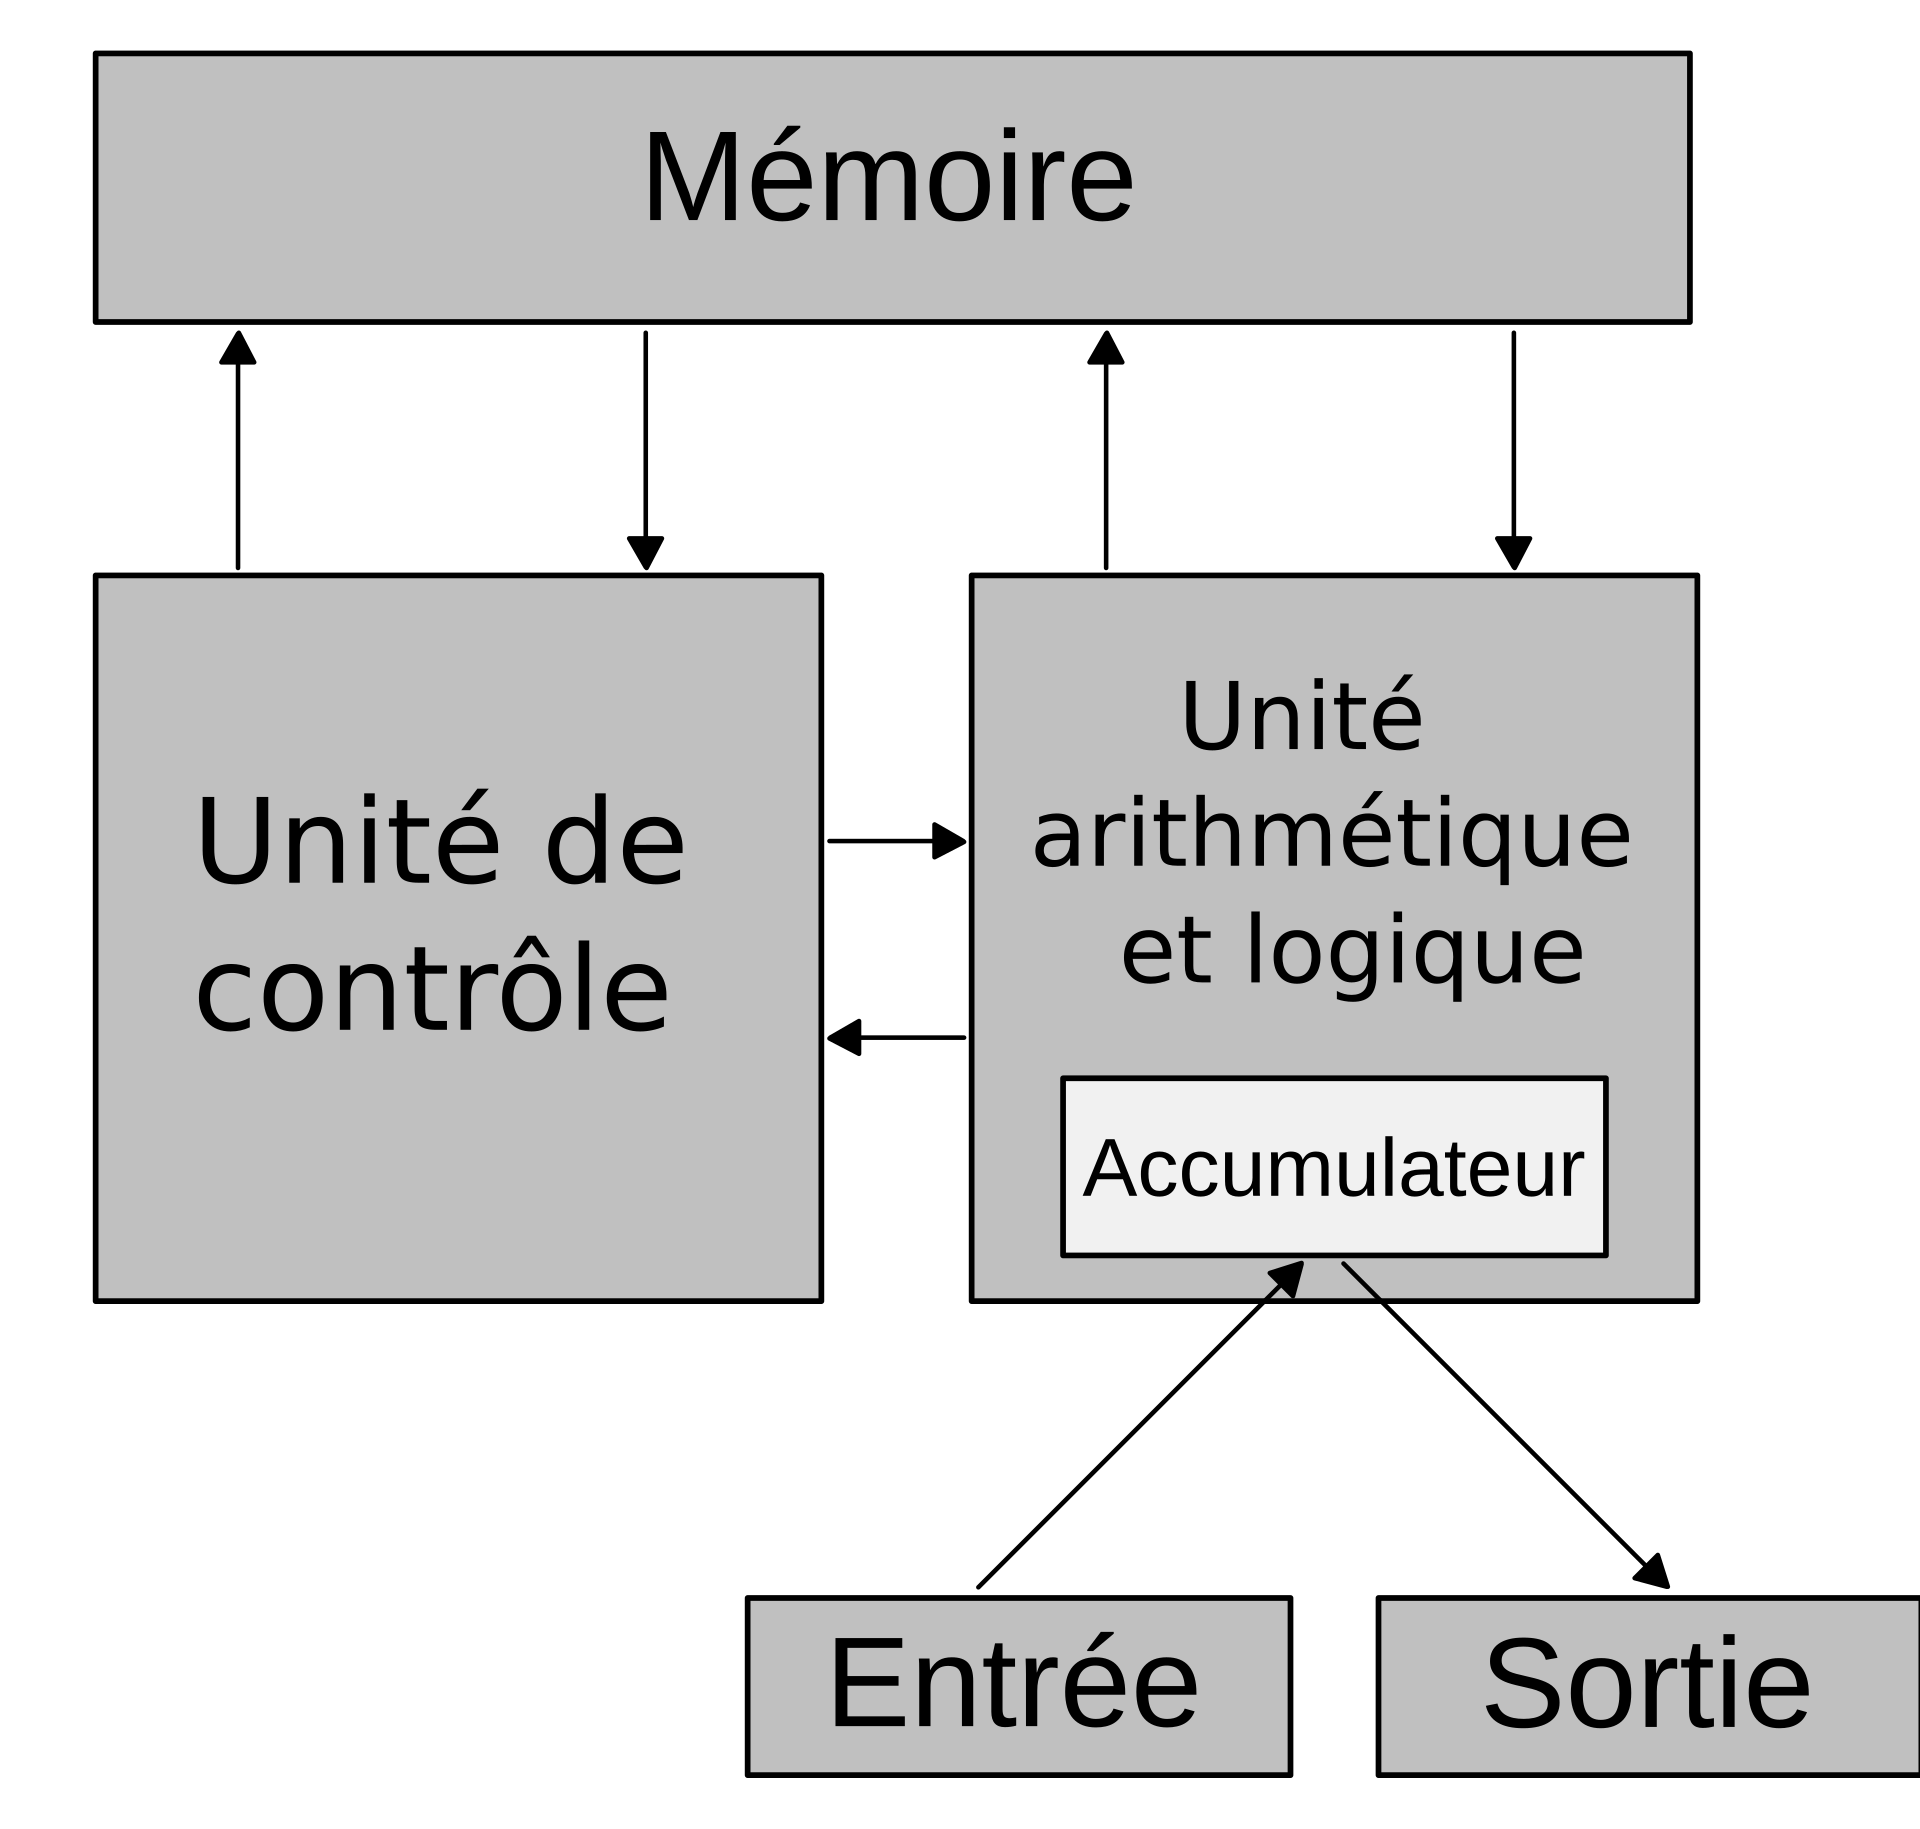 L'UNITE CENTRALE/# 5L'introduction à l'informatique. 